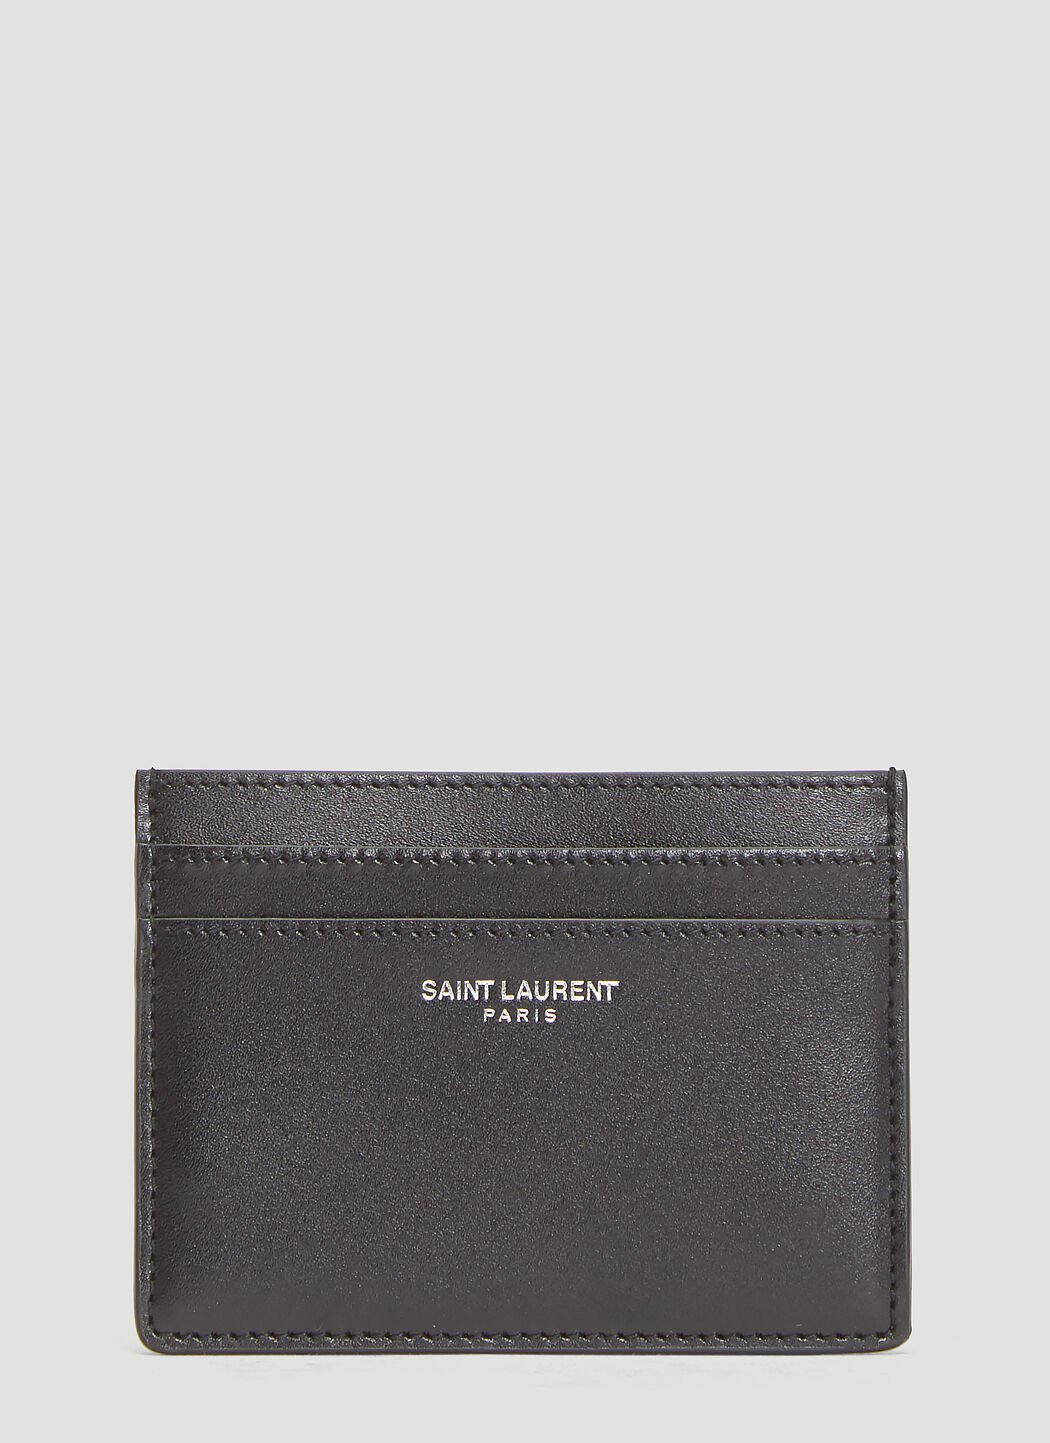 Saint Laurent Credit Card Holder Black sla0138034